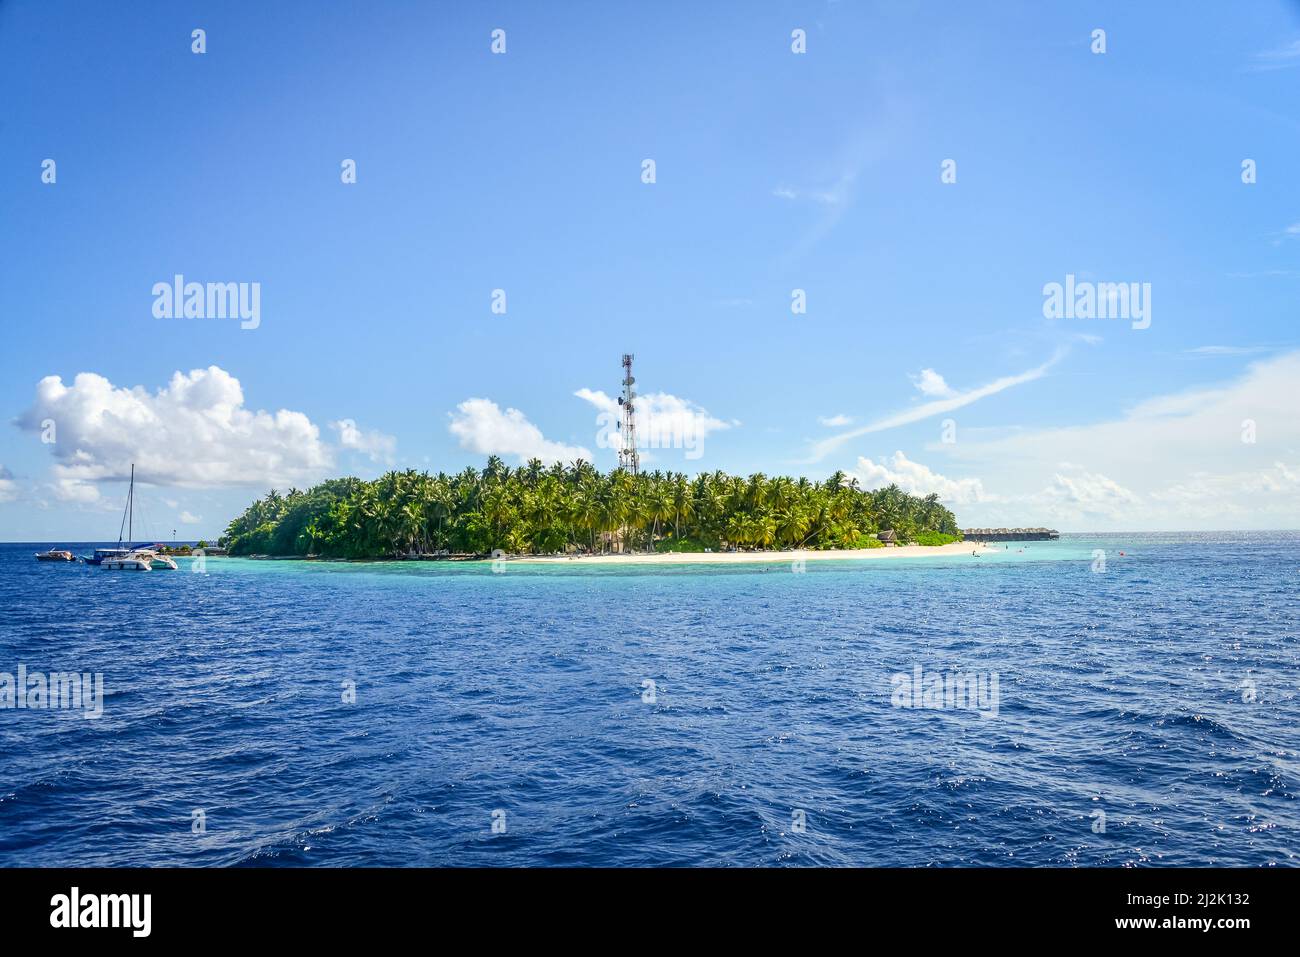 Boats anchored by Fihalhohi island, Maldives Stock Photo